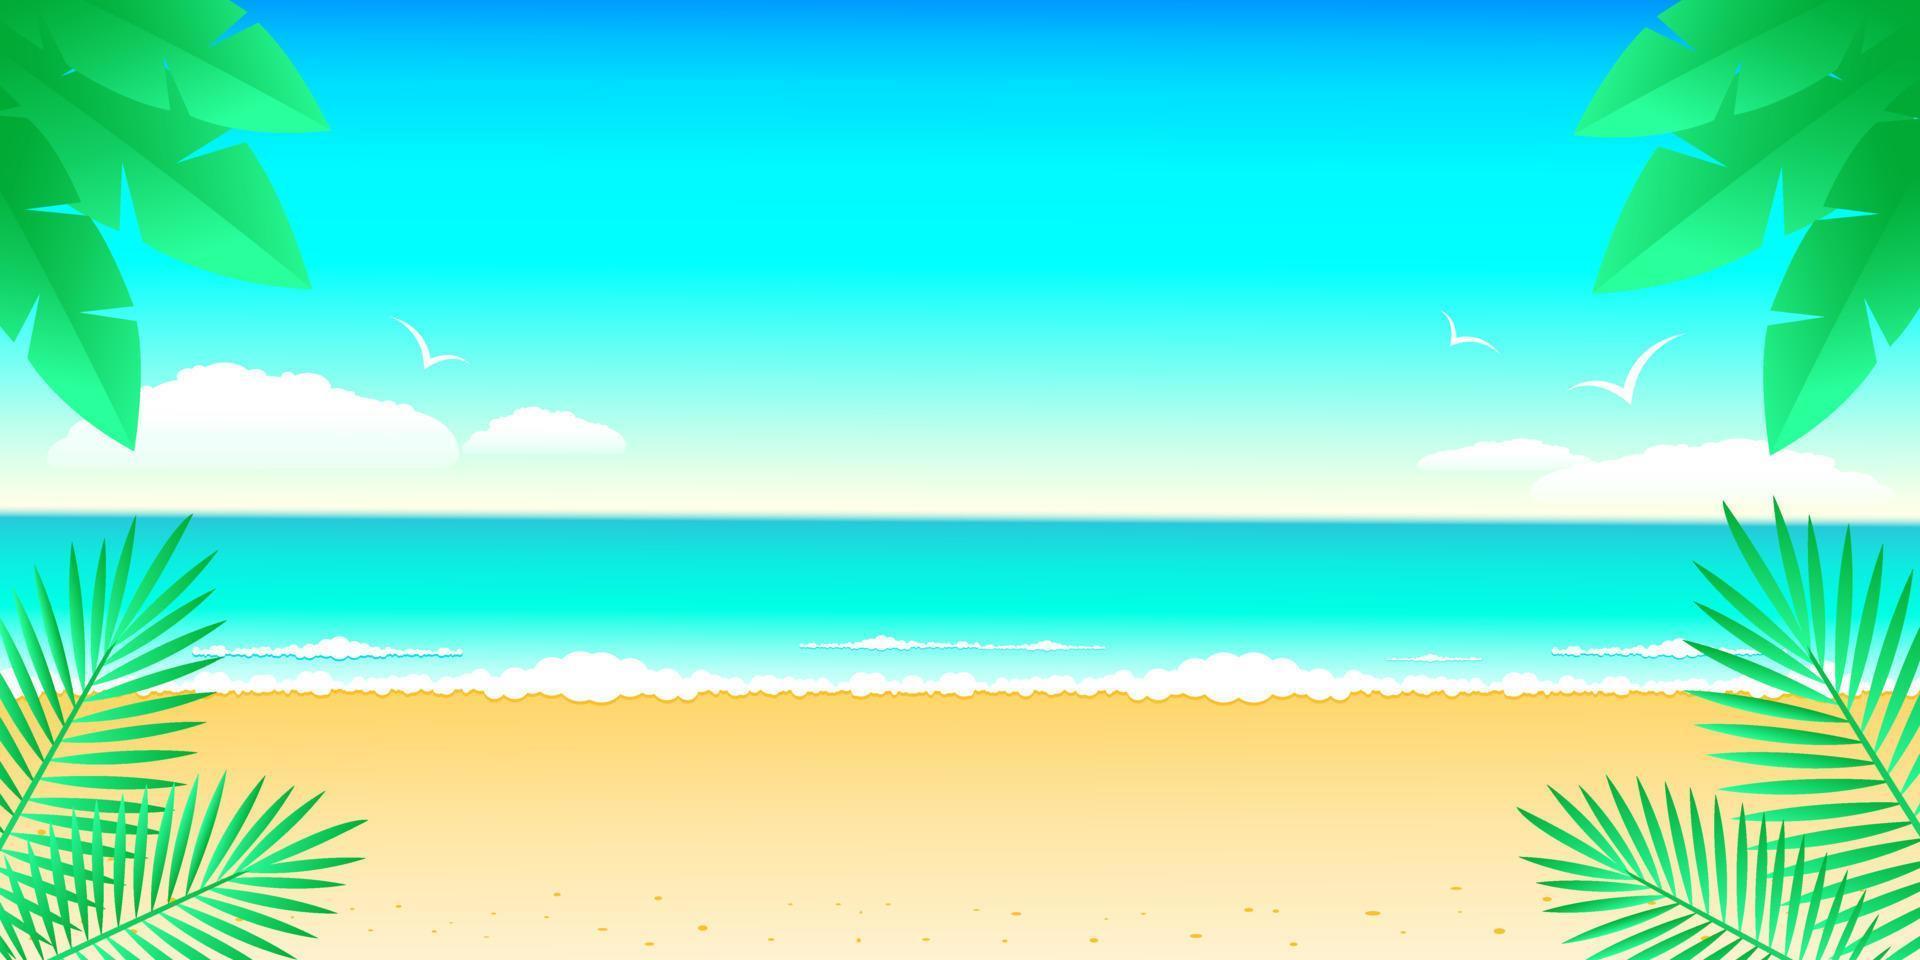 playa vacía mar y hojas de palma, paisaje marino paraíso. verano vacaciones viajes concepto diseño banner publicidad stock vector ilustración con espacio de copia.